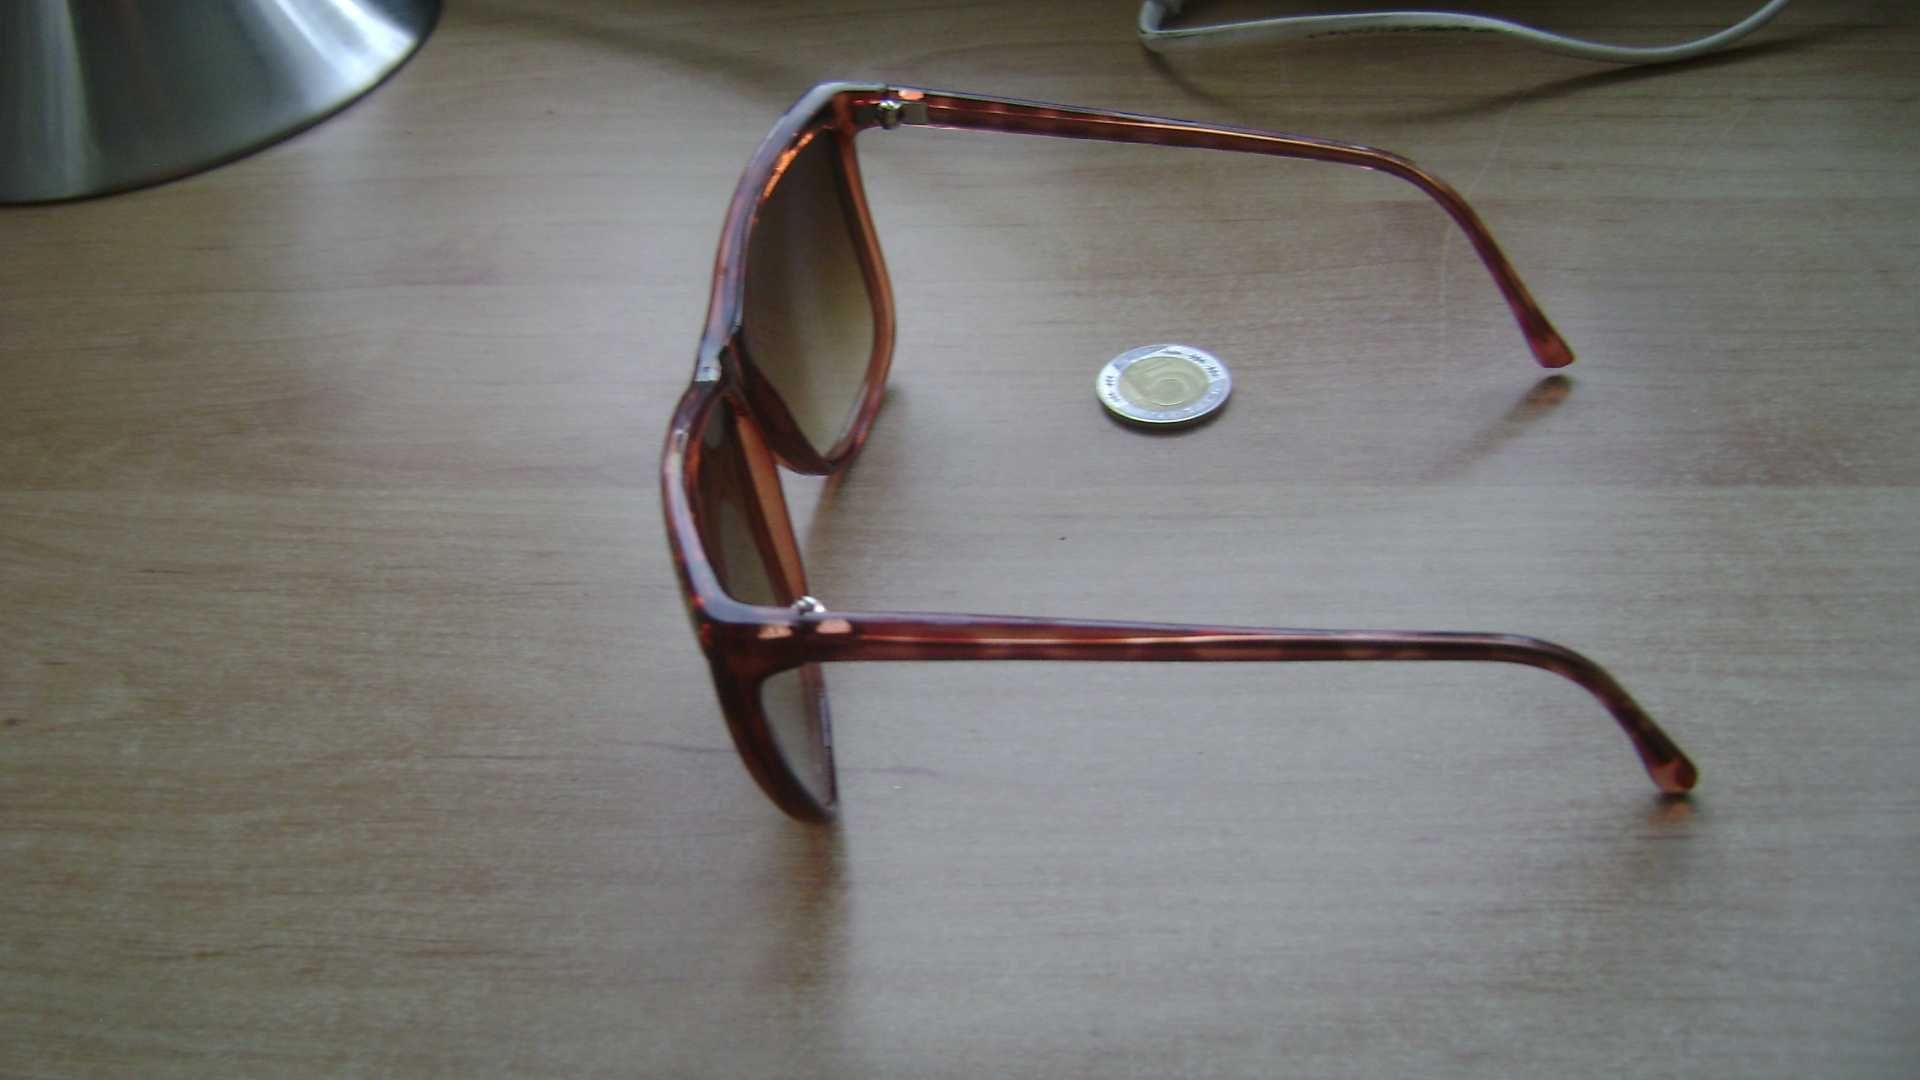 Starocie z PRL - Okulary przeciwsłoneczne COBRA damskie, rozstaw 13 cm